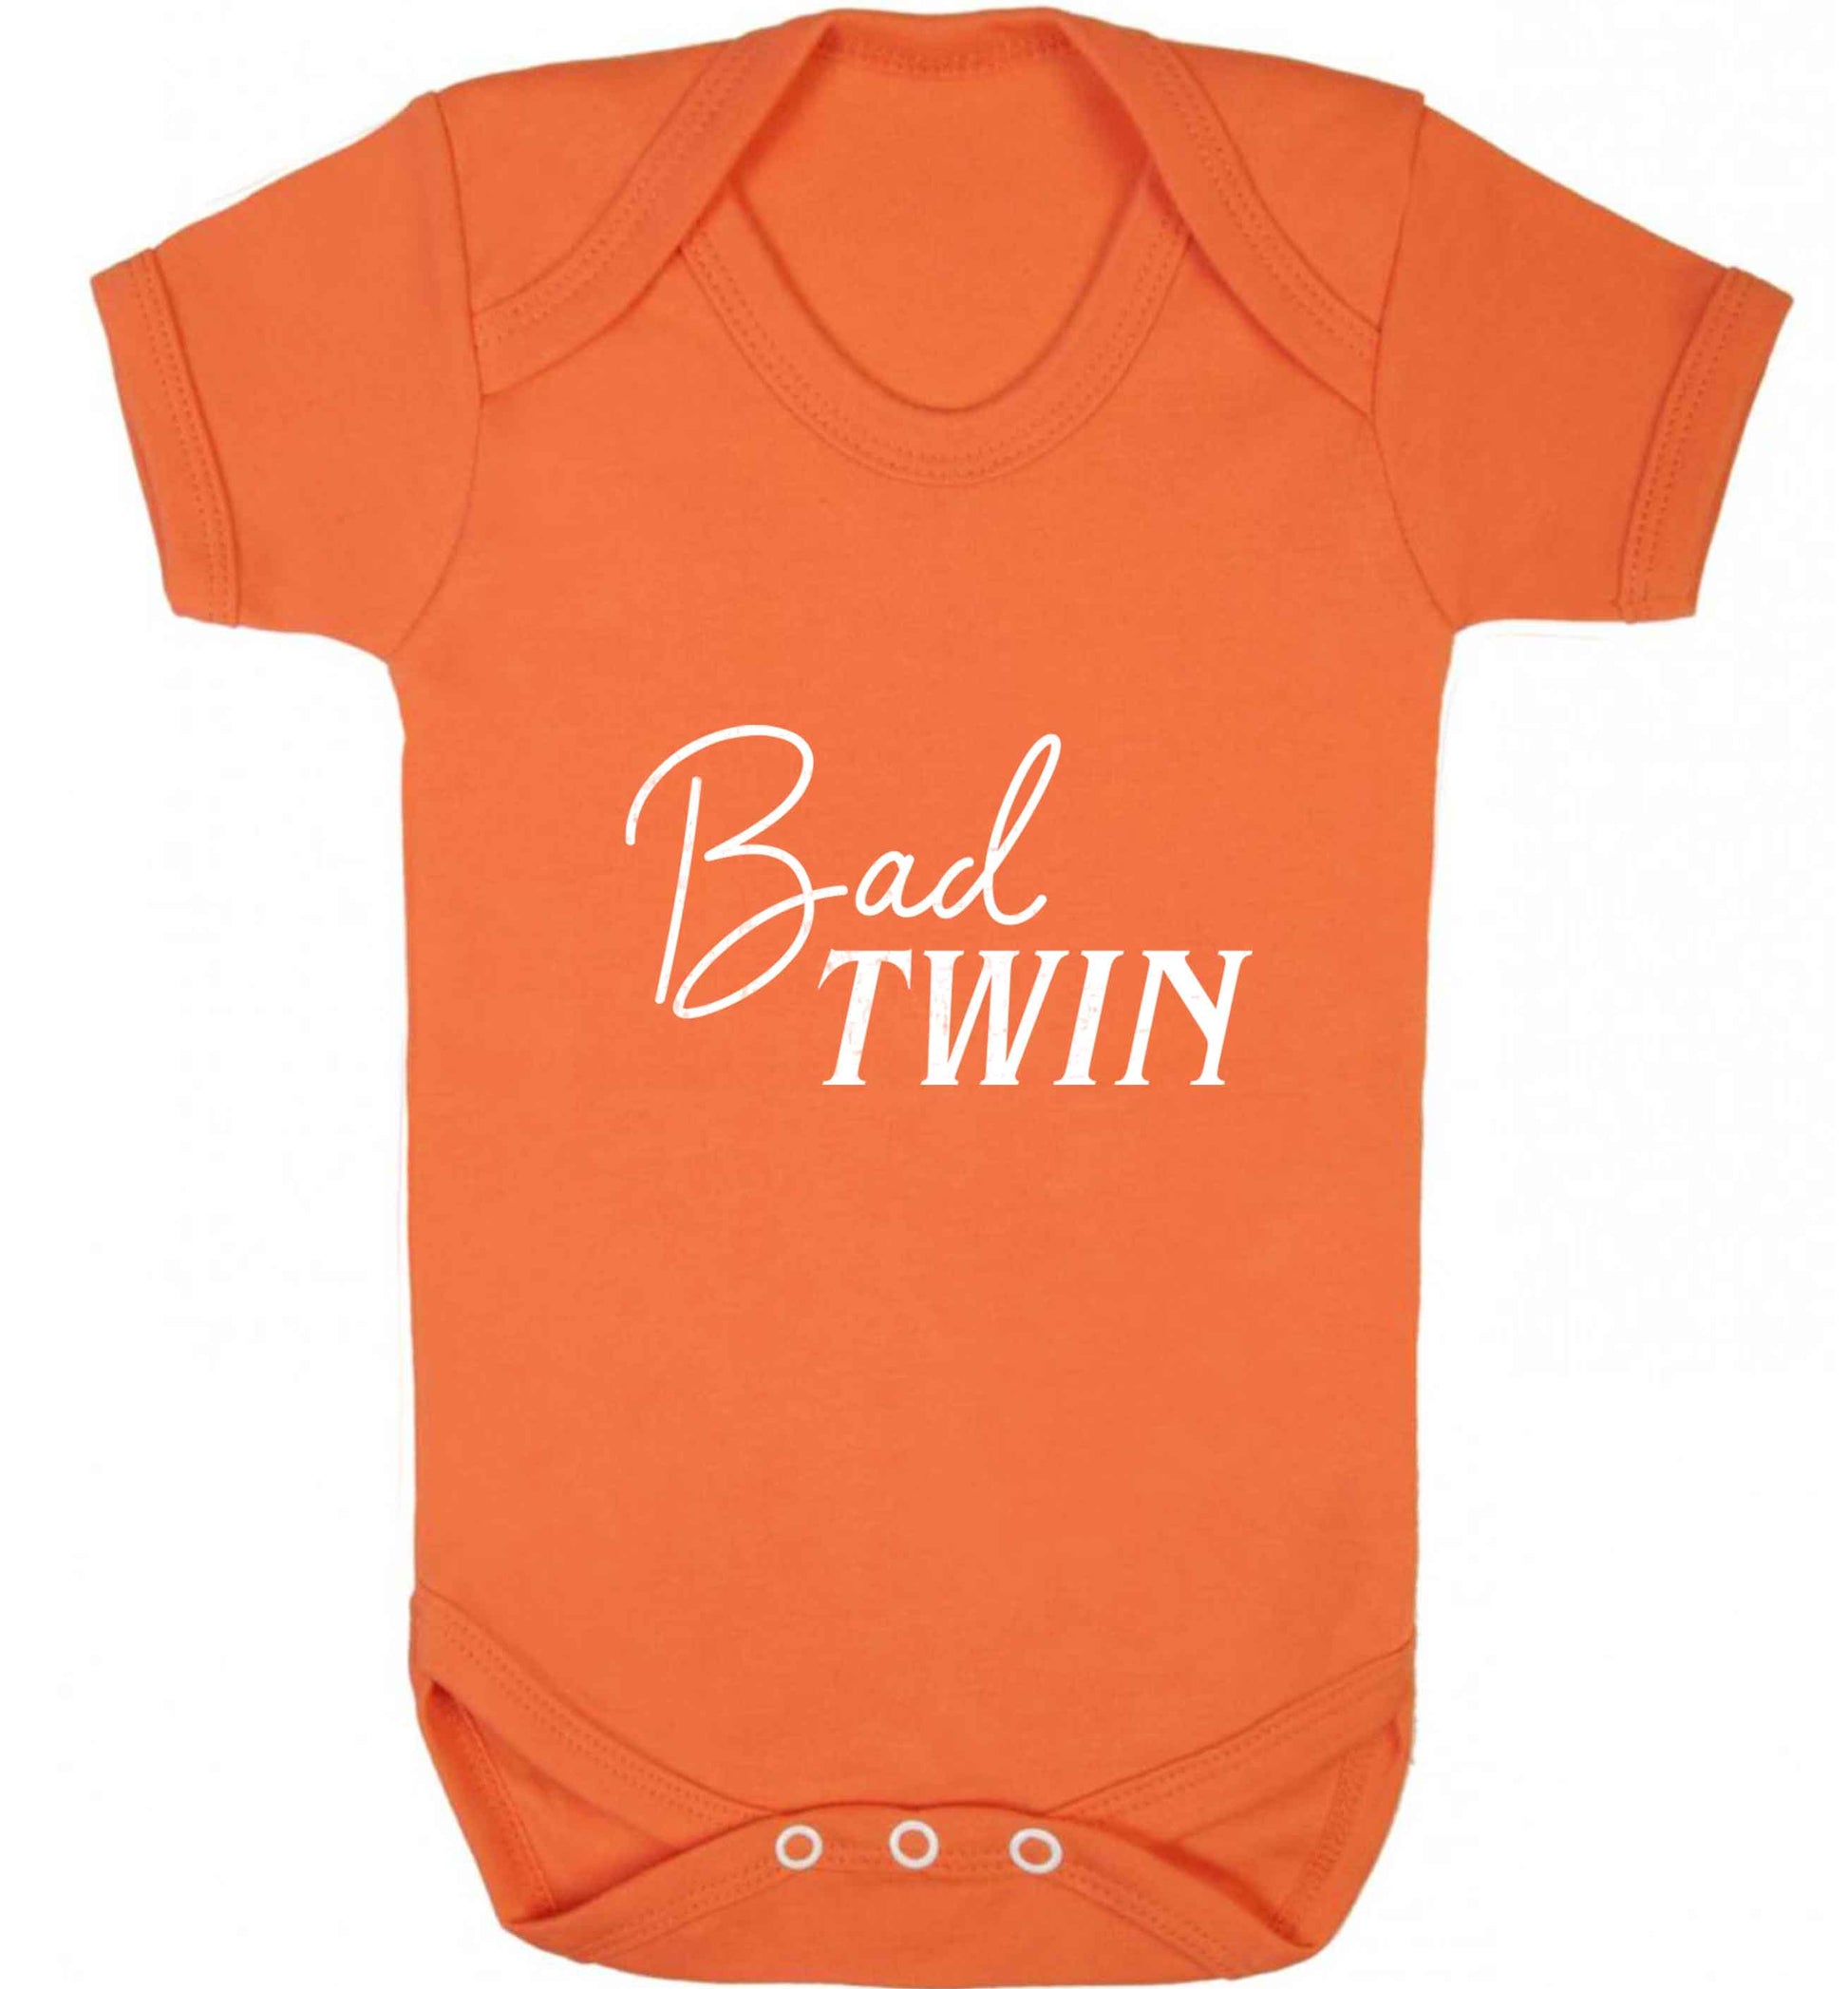 Bad twin baby vest orange 18-24 months